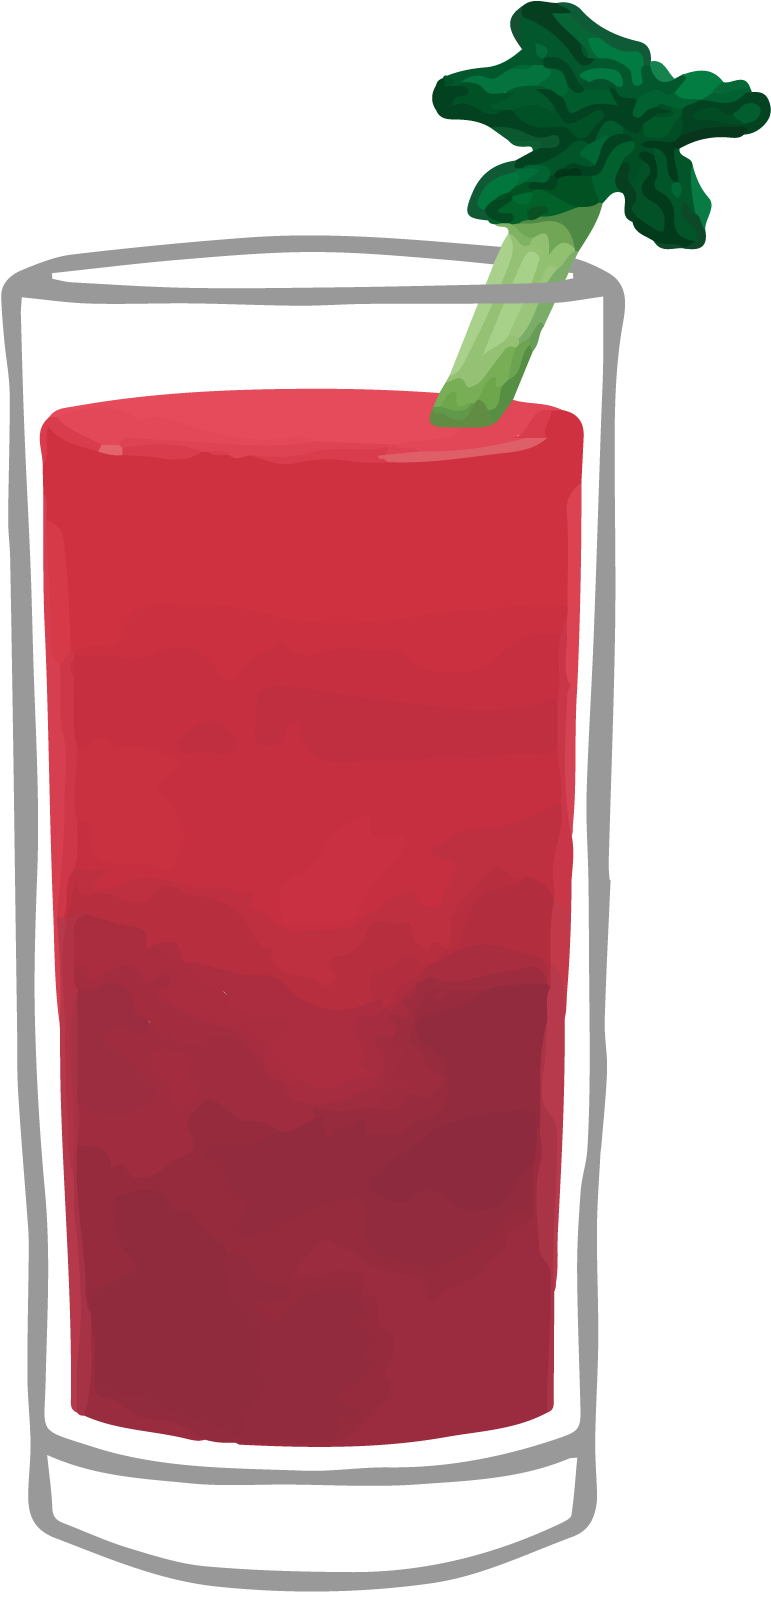 Cranberry Juice Apple Juice - Cranberry Juice Apple Juice (1200x2378)